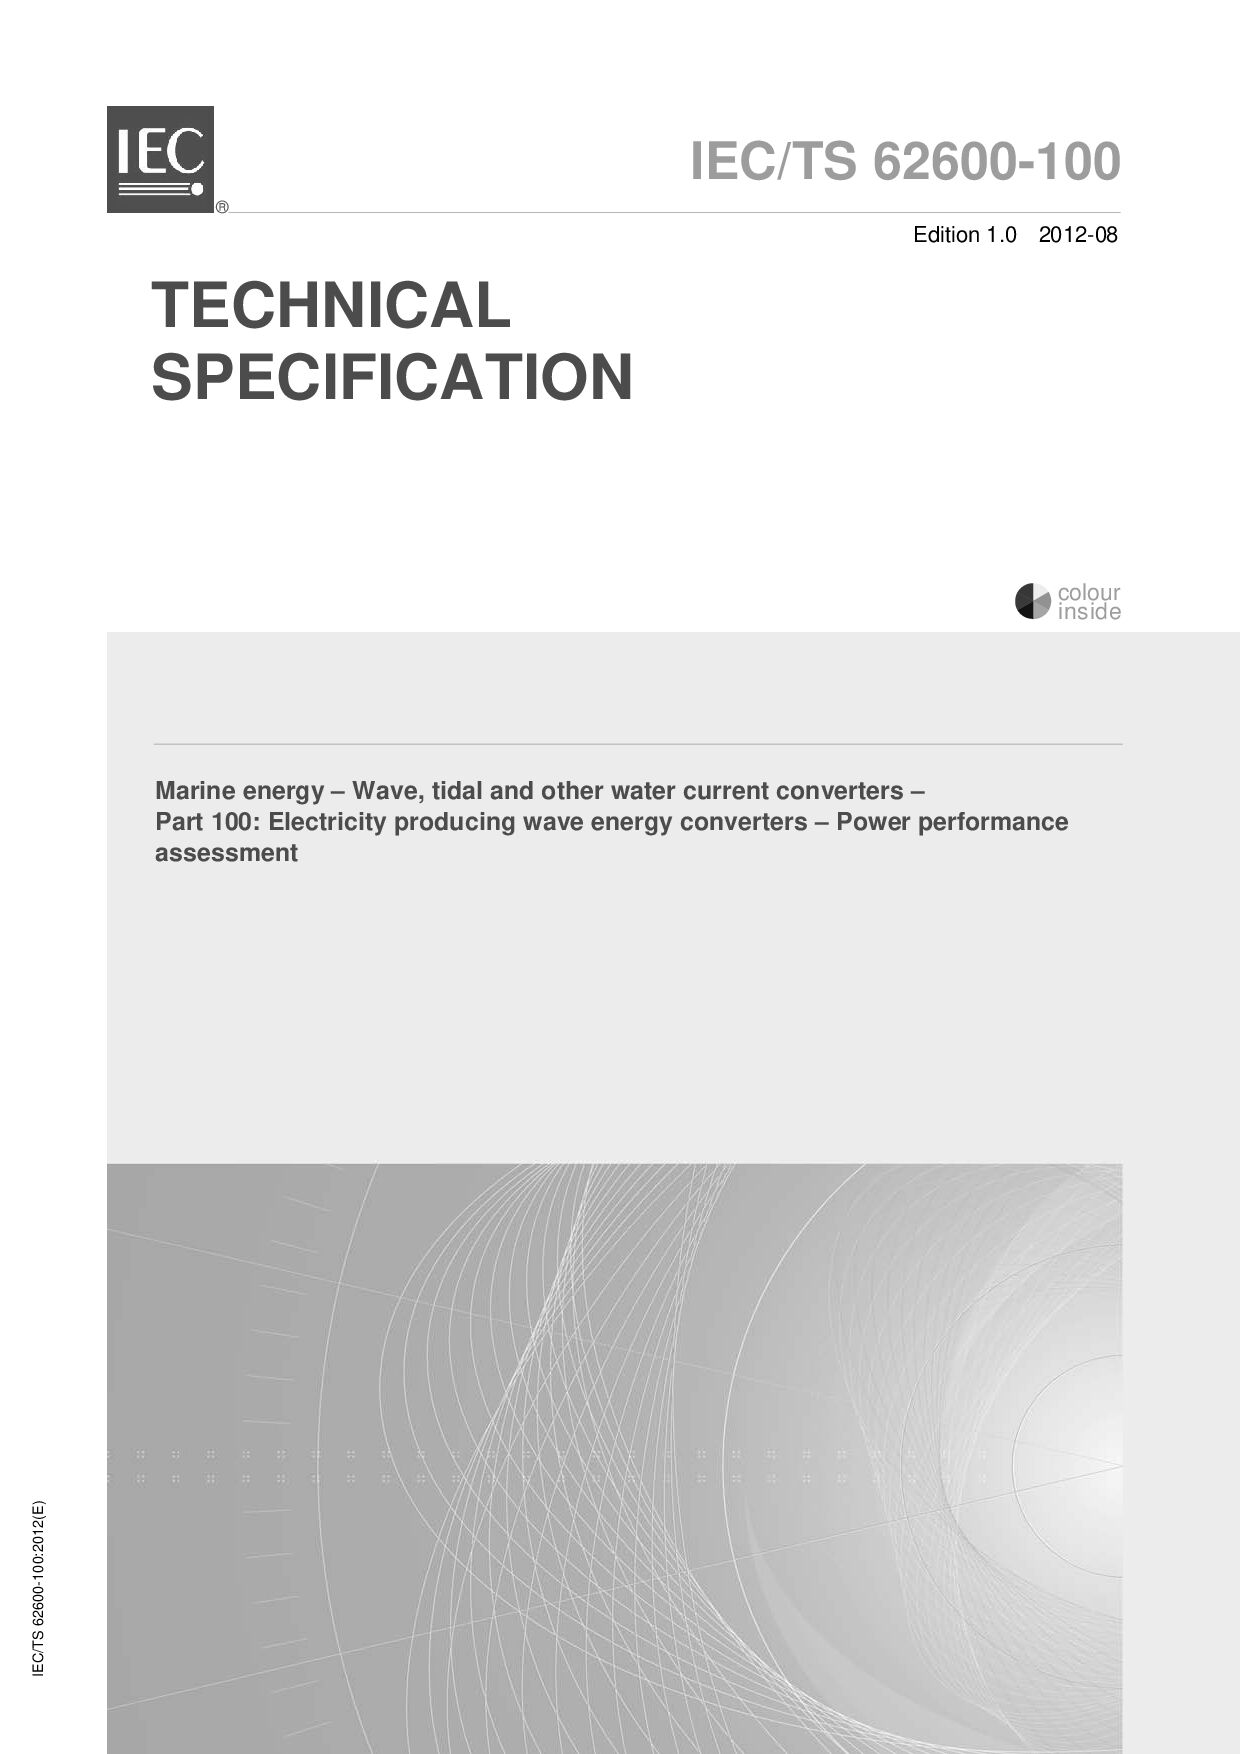 IEC TS 62600-100:2012